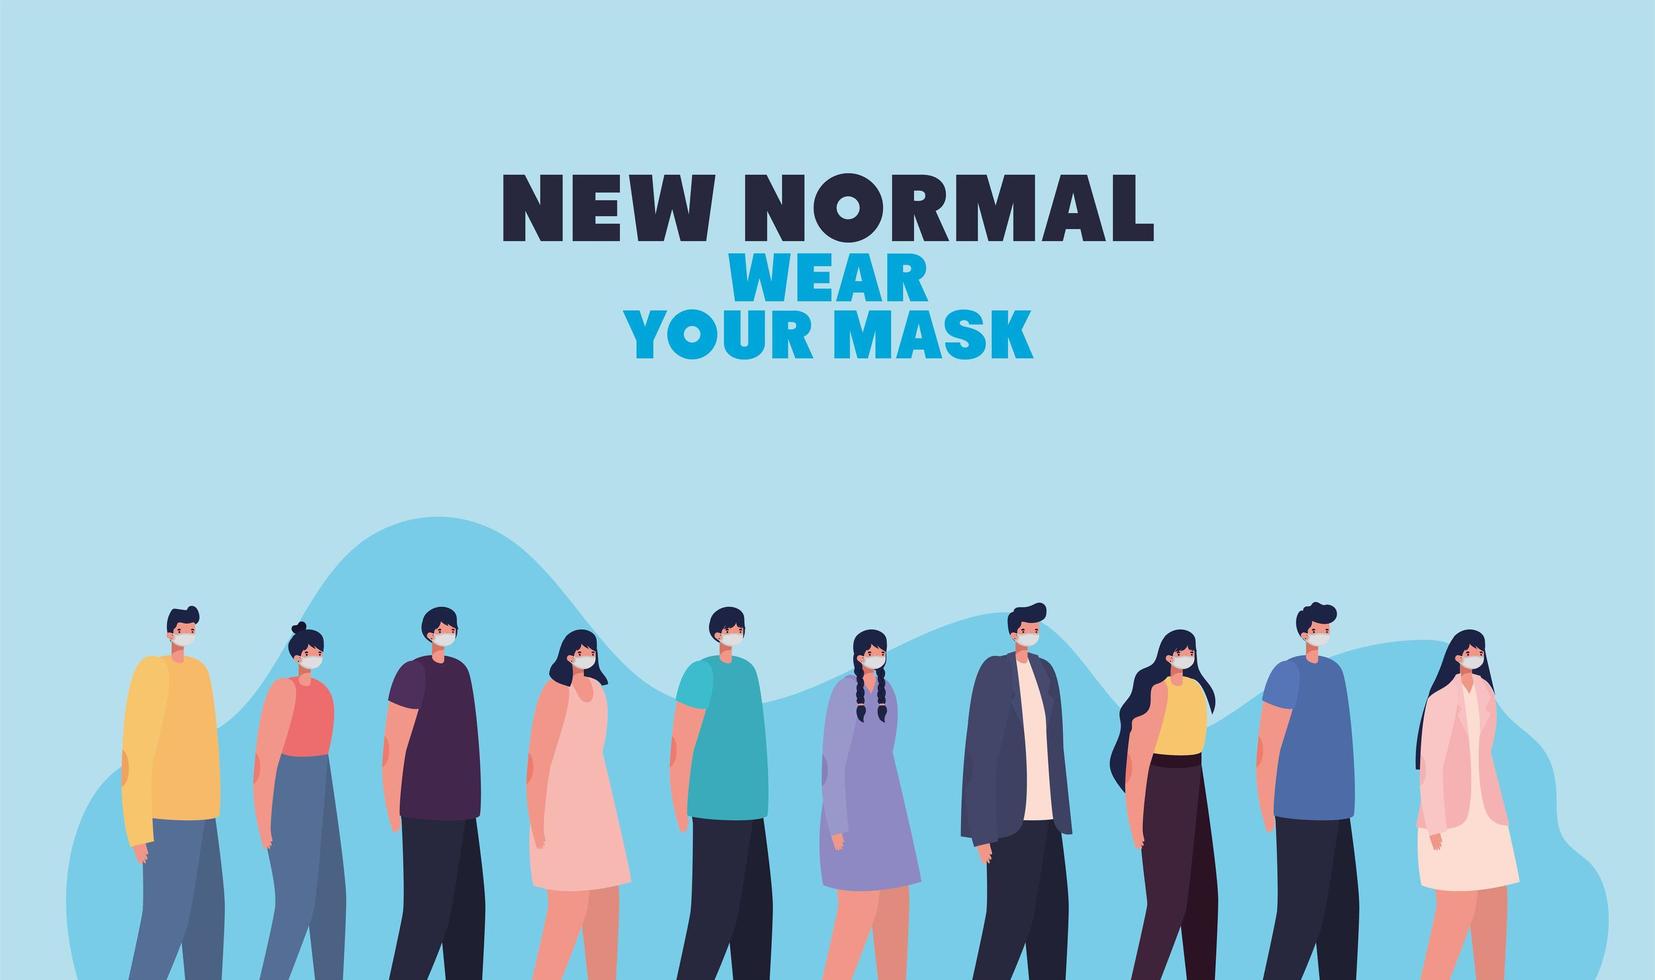 nouveau port normal de votre lettrage de masque et ensemble de personnes occasionnelles avec masque de sécurité vecteur